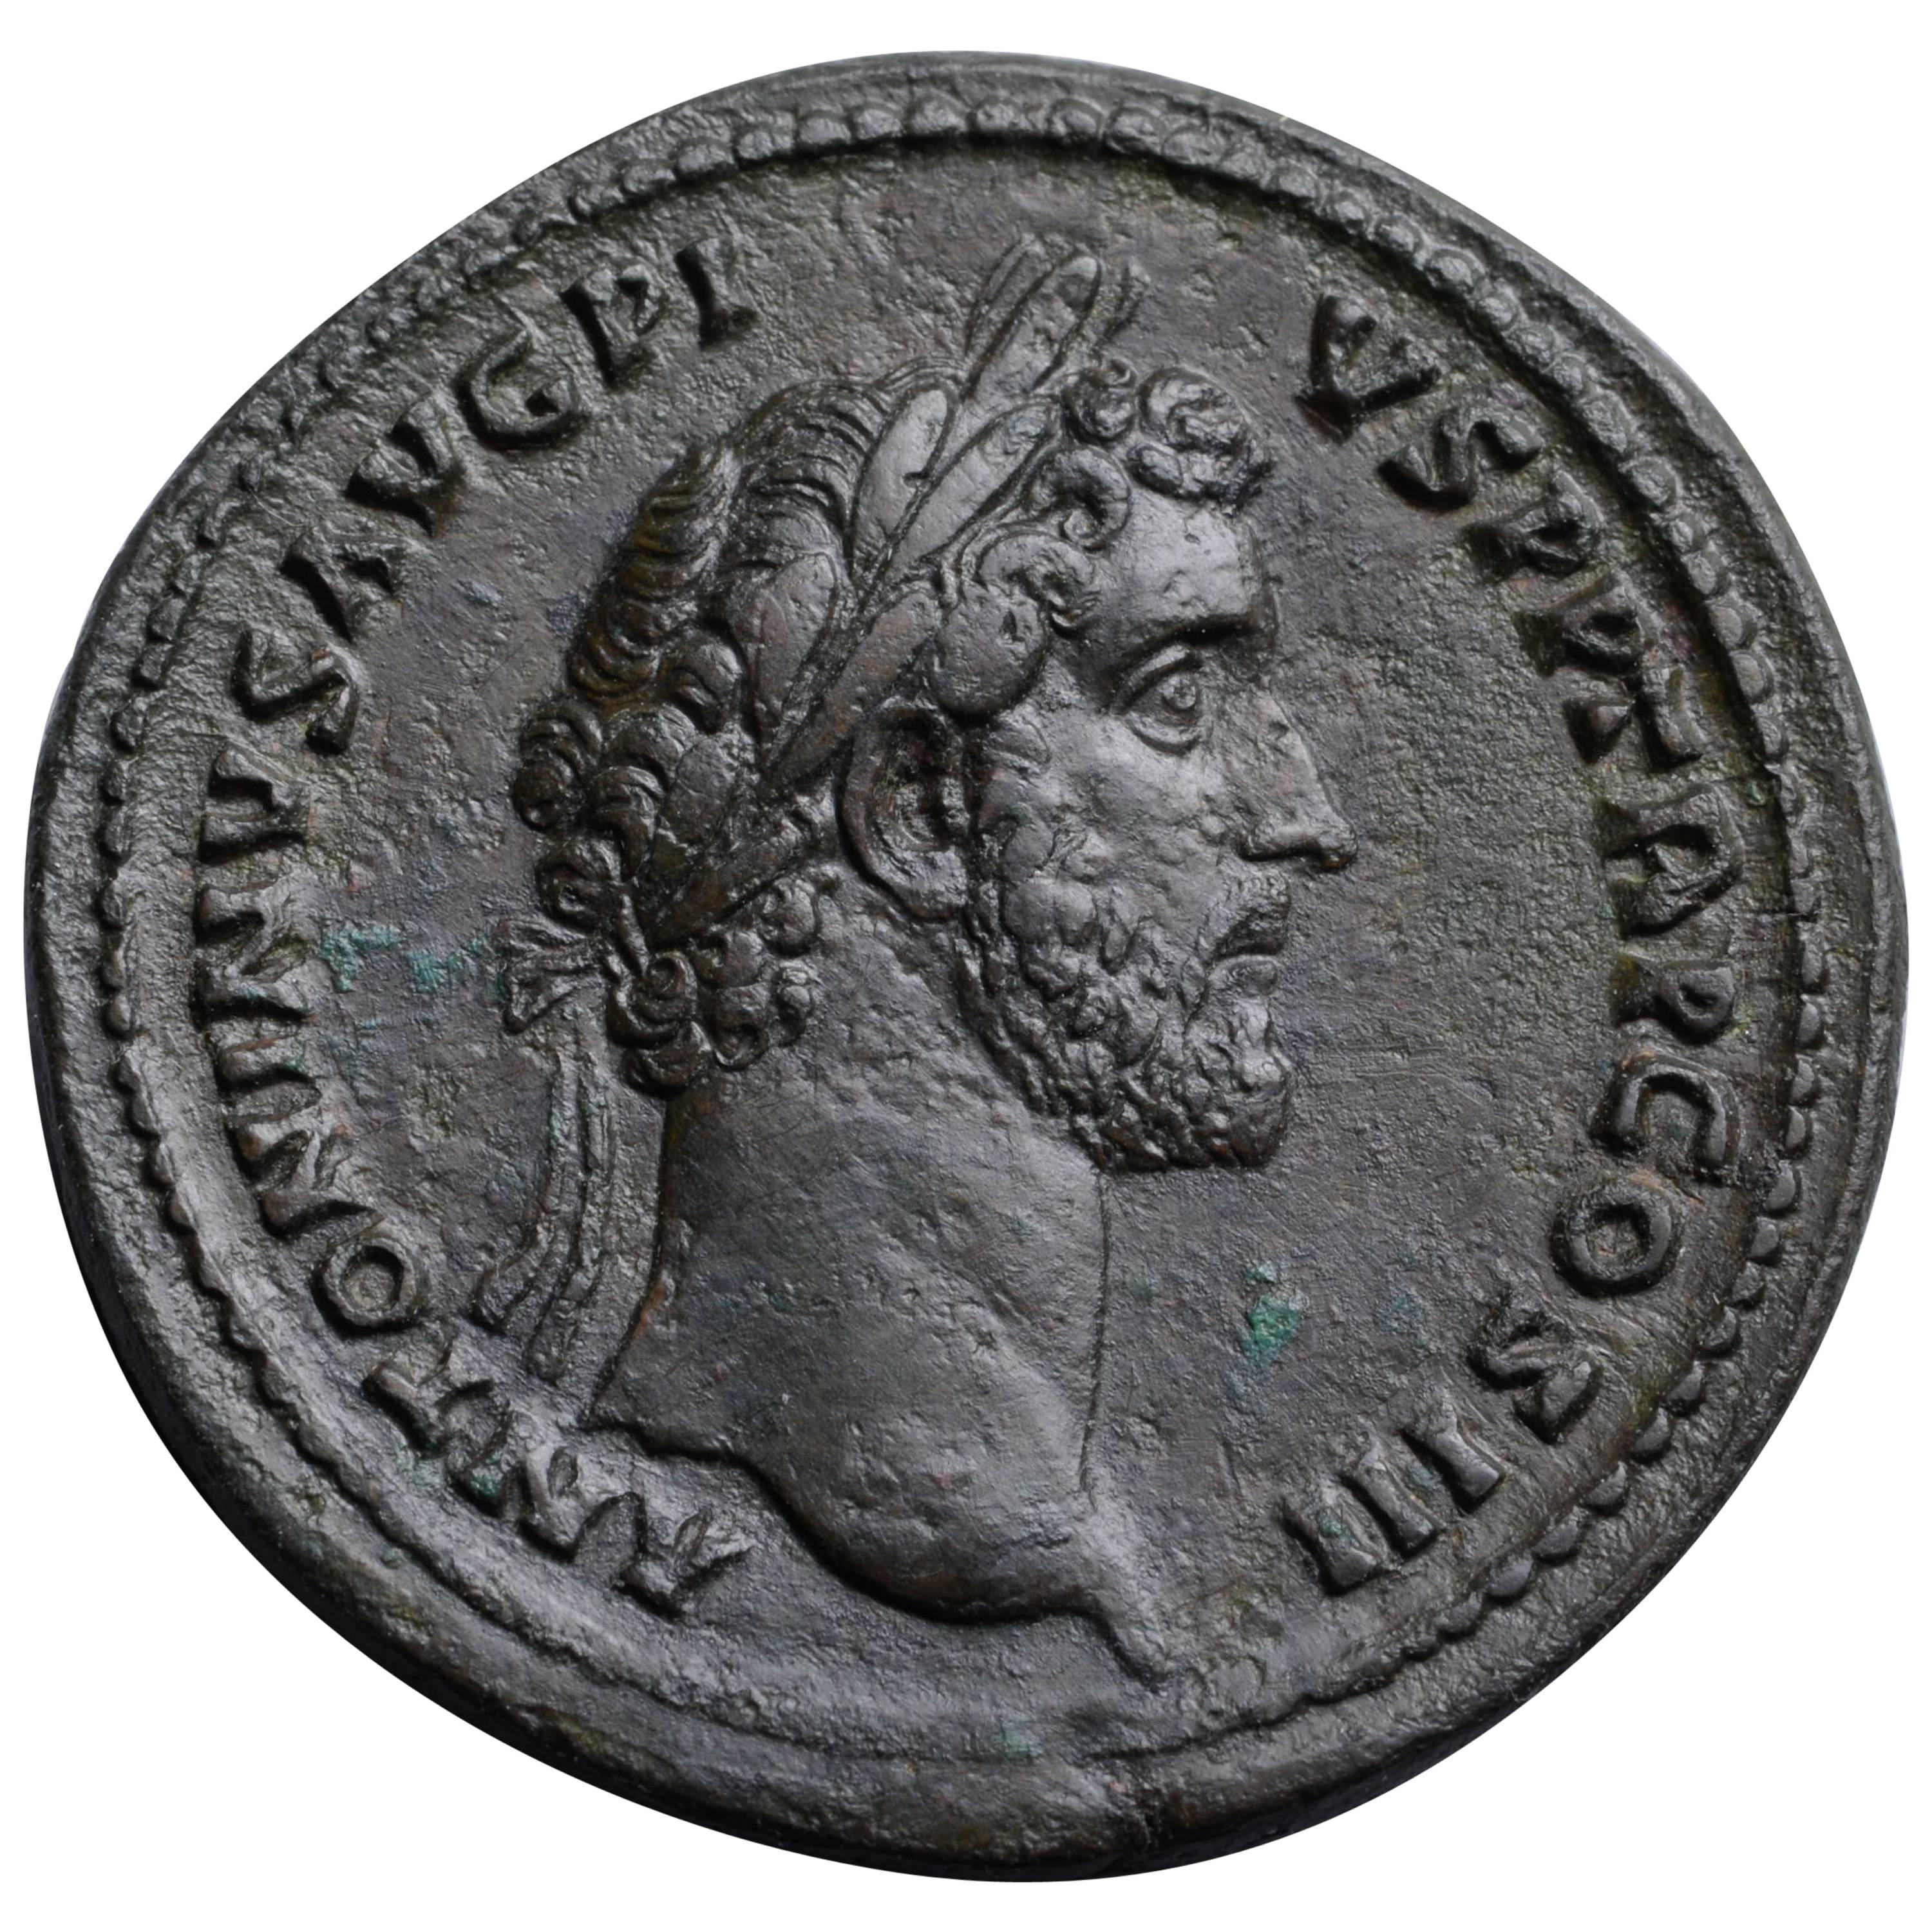 Ancient Roman Sestertius Coin of Emperor Antoninus Pius, 142 AD